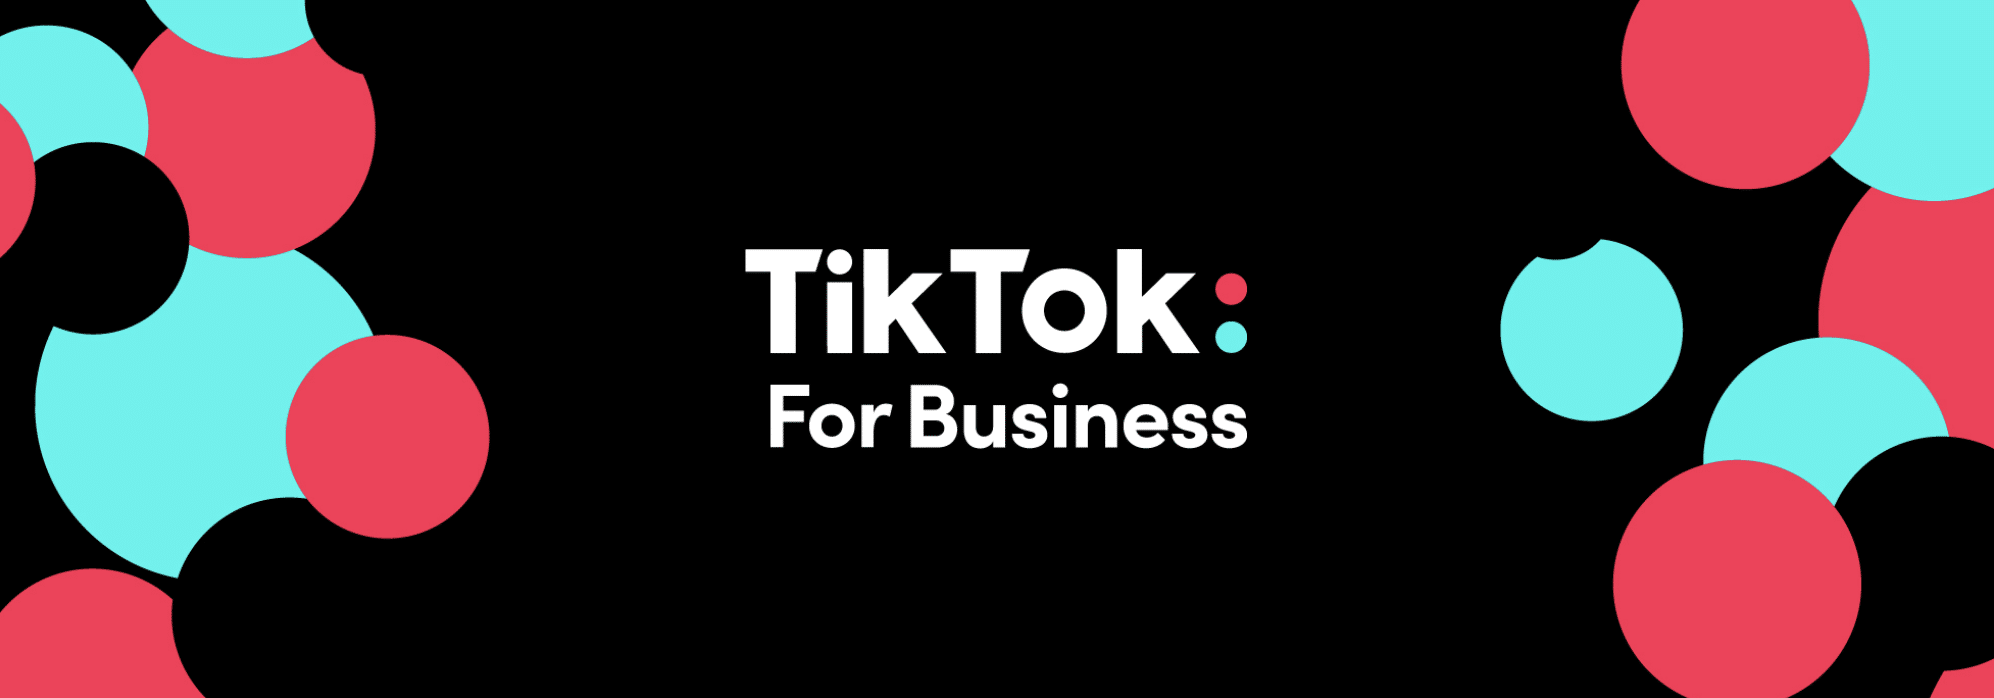 Tiktok for business